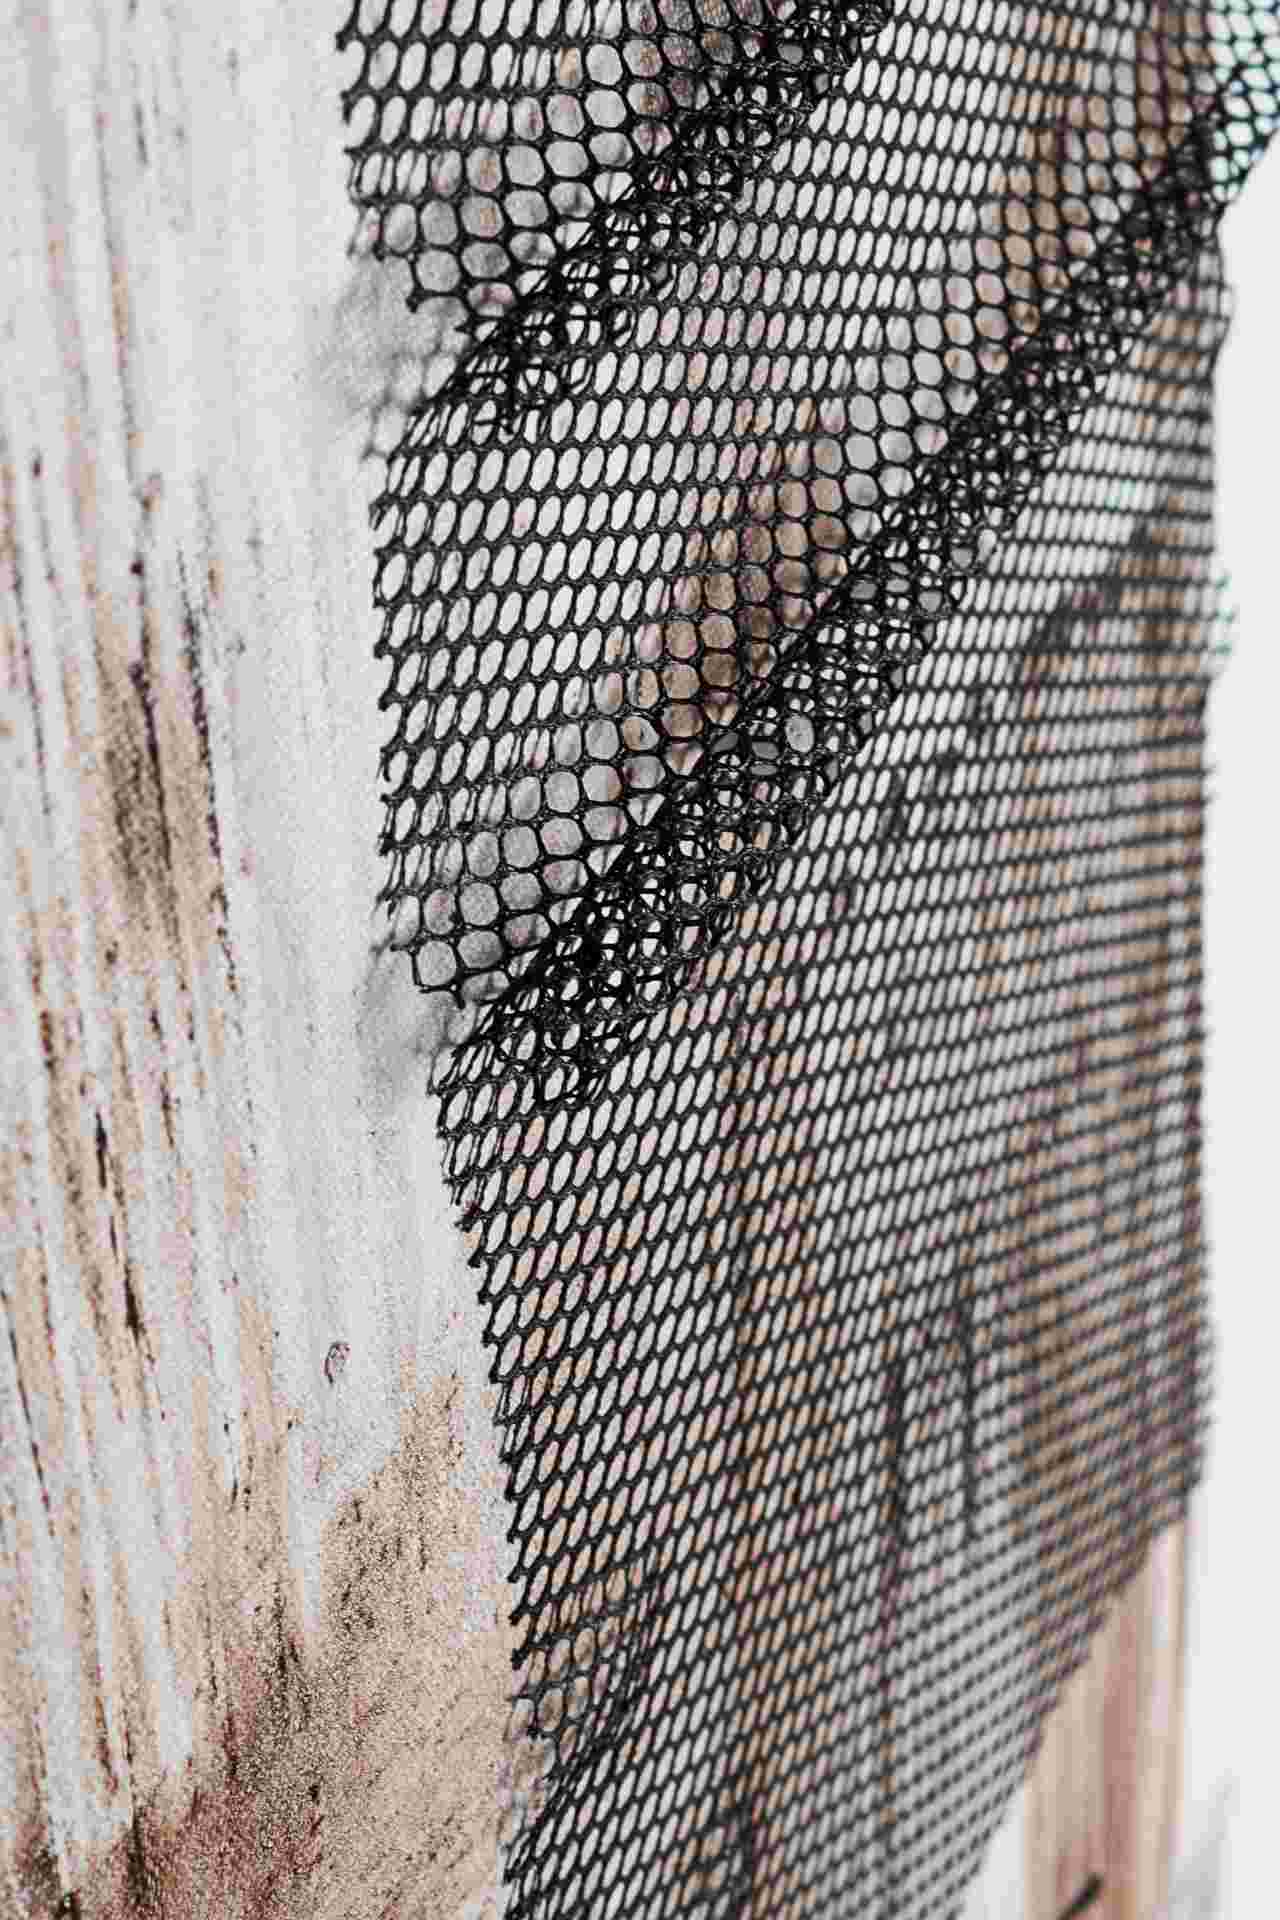 Das Ölbild Wire No.1 überzeugt mit ihrem klassischen Design. Das Bild verfügt über einen Druck auf Leinwand. Das Gestell ist aus Tannenholz und der Rahmen aus Kunststoff. Die Maße sind 82x122 cm.